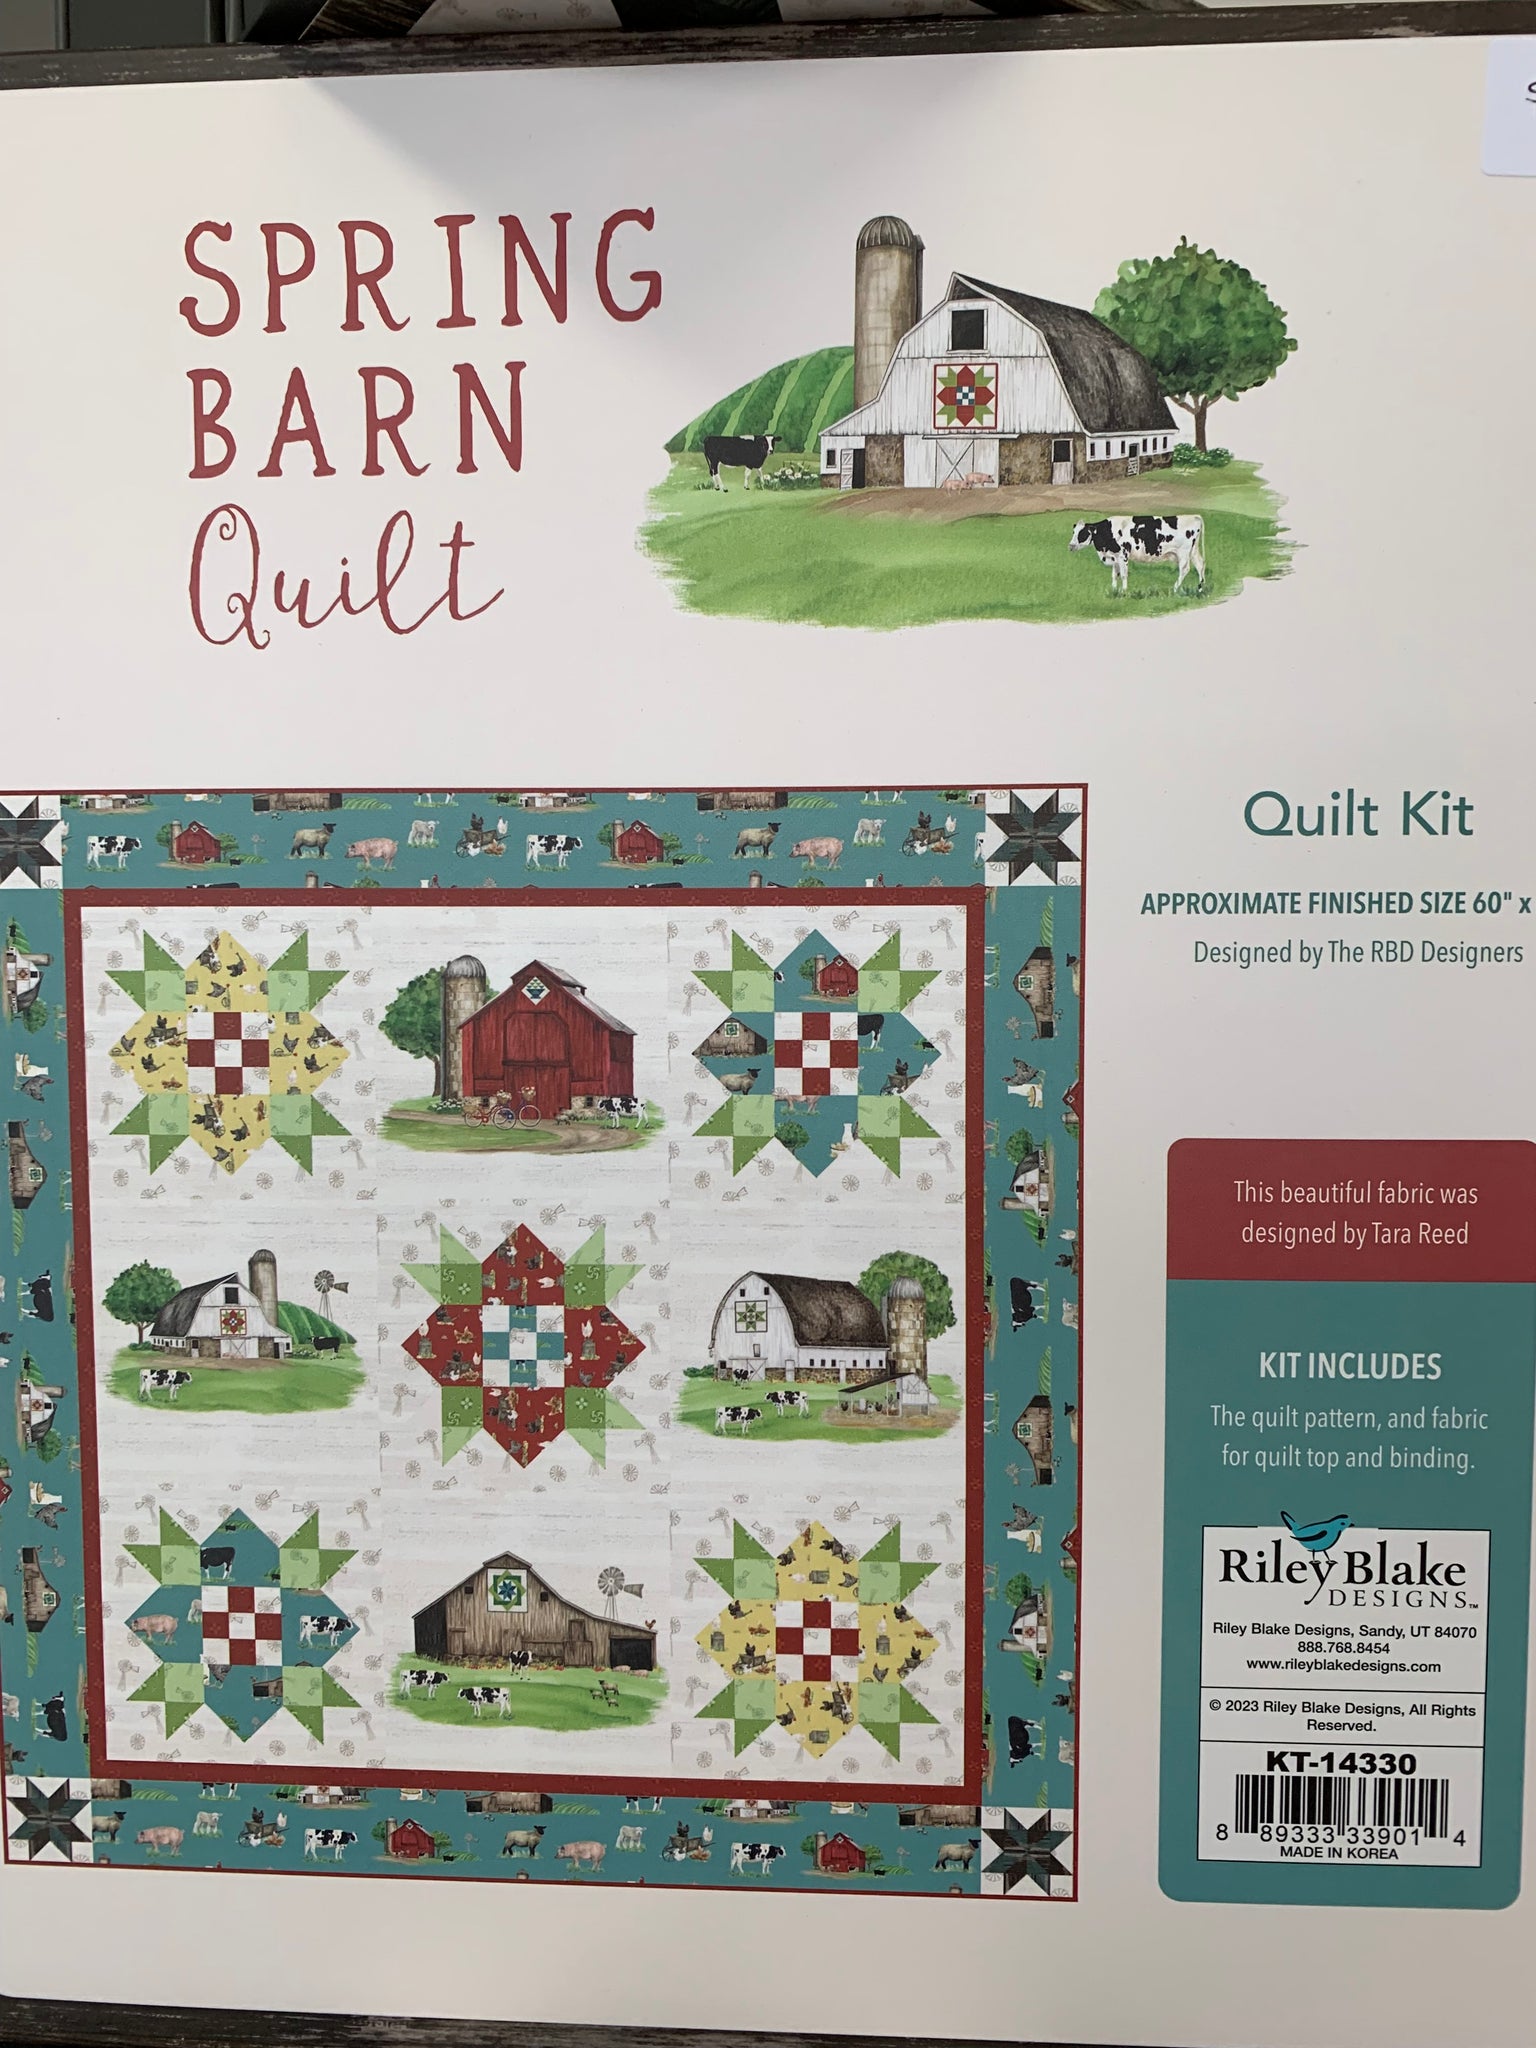 Riley Blake’s Spring Barn Quilt Kit